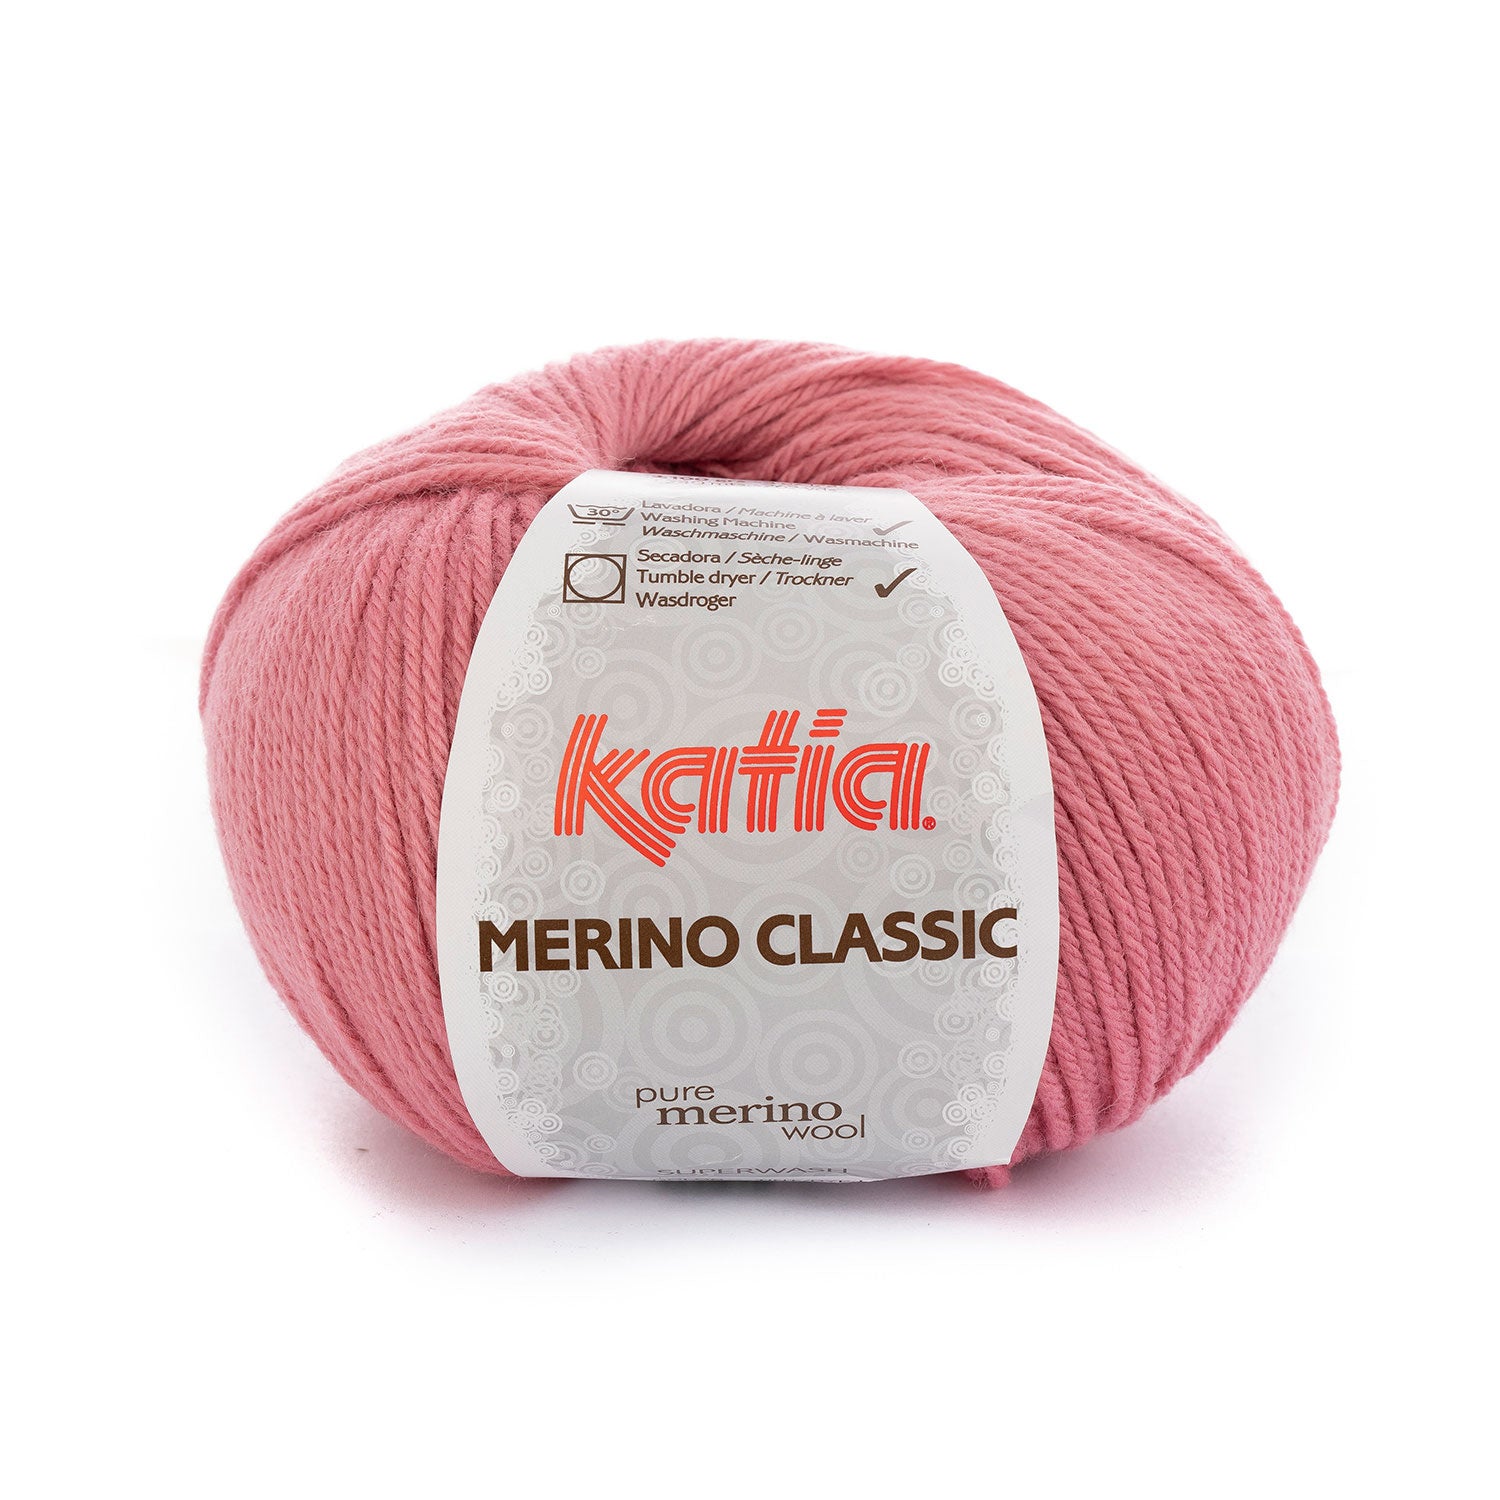 Merino classic color 26